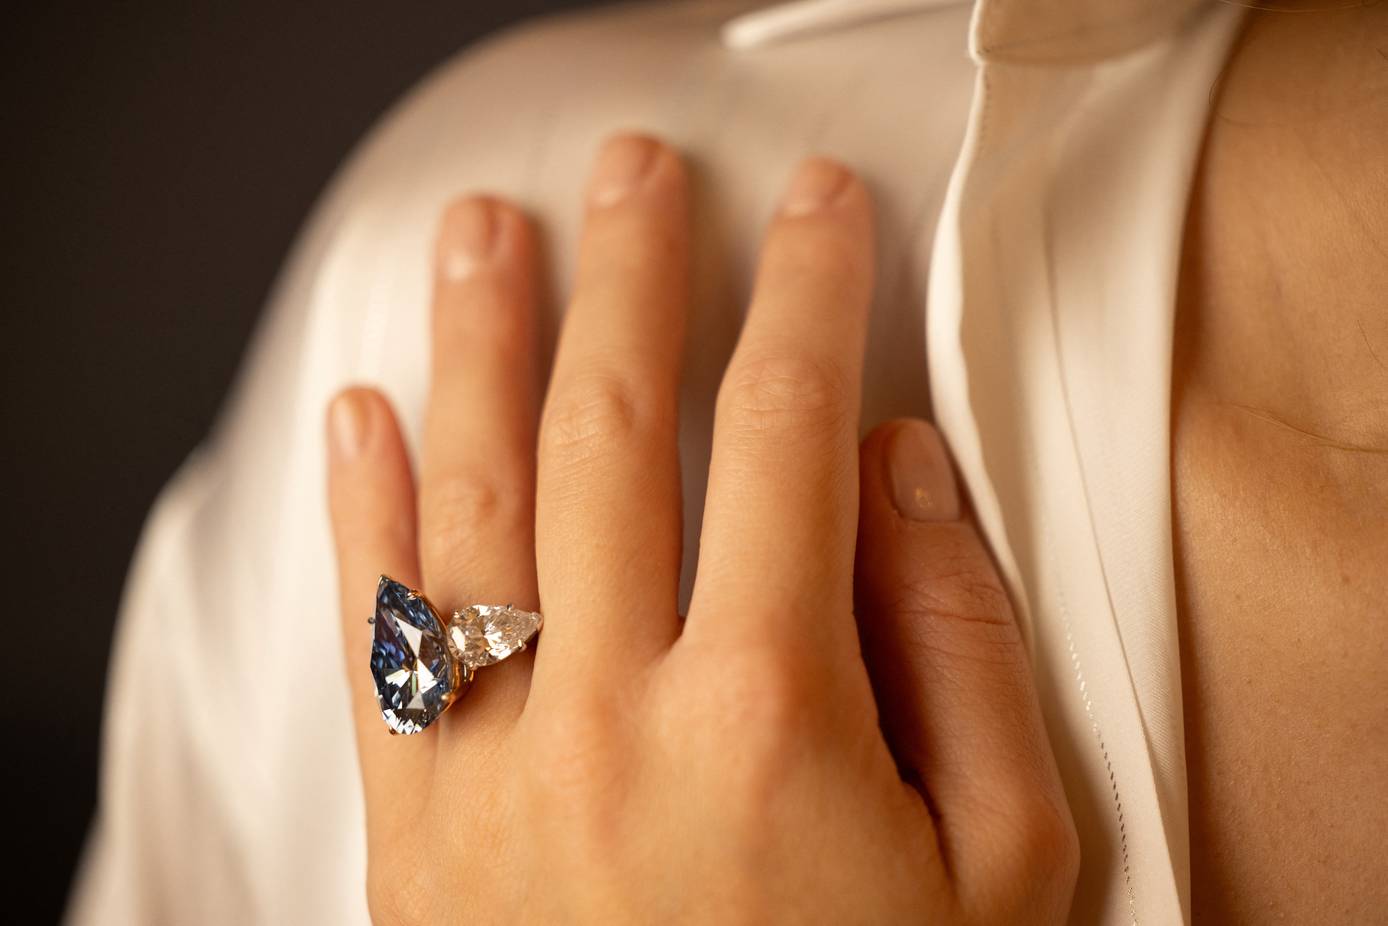 Blauer Diamant für fast 41 Millionen Euro bei Christie's versteigert -  Business Insider